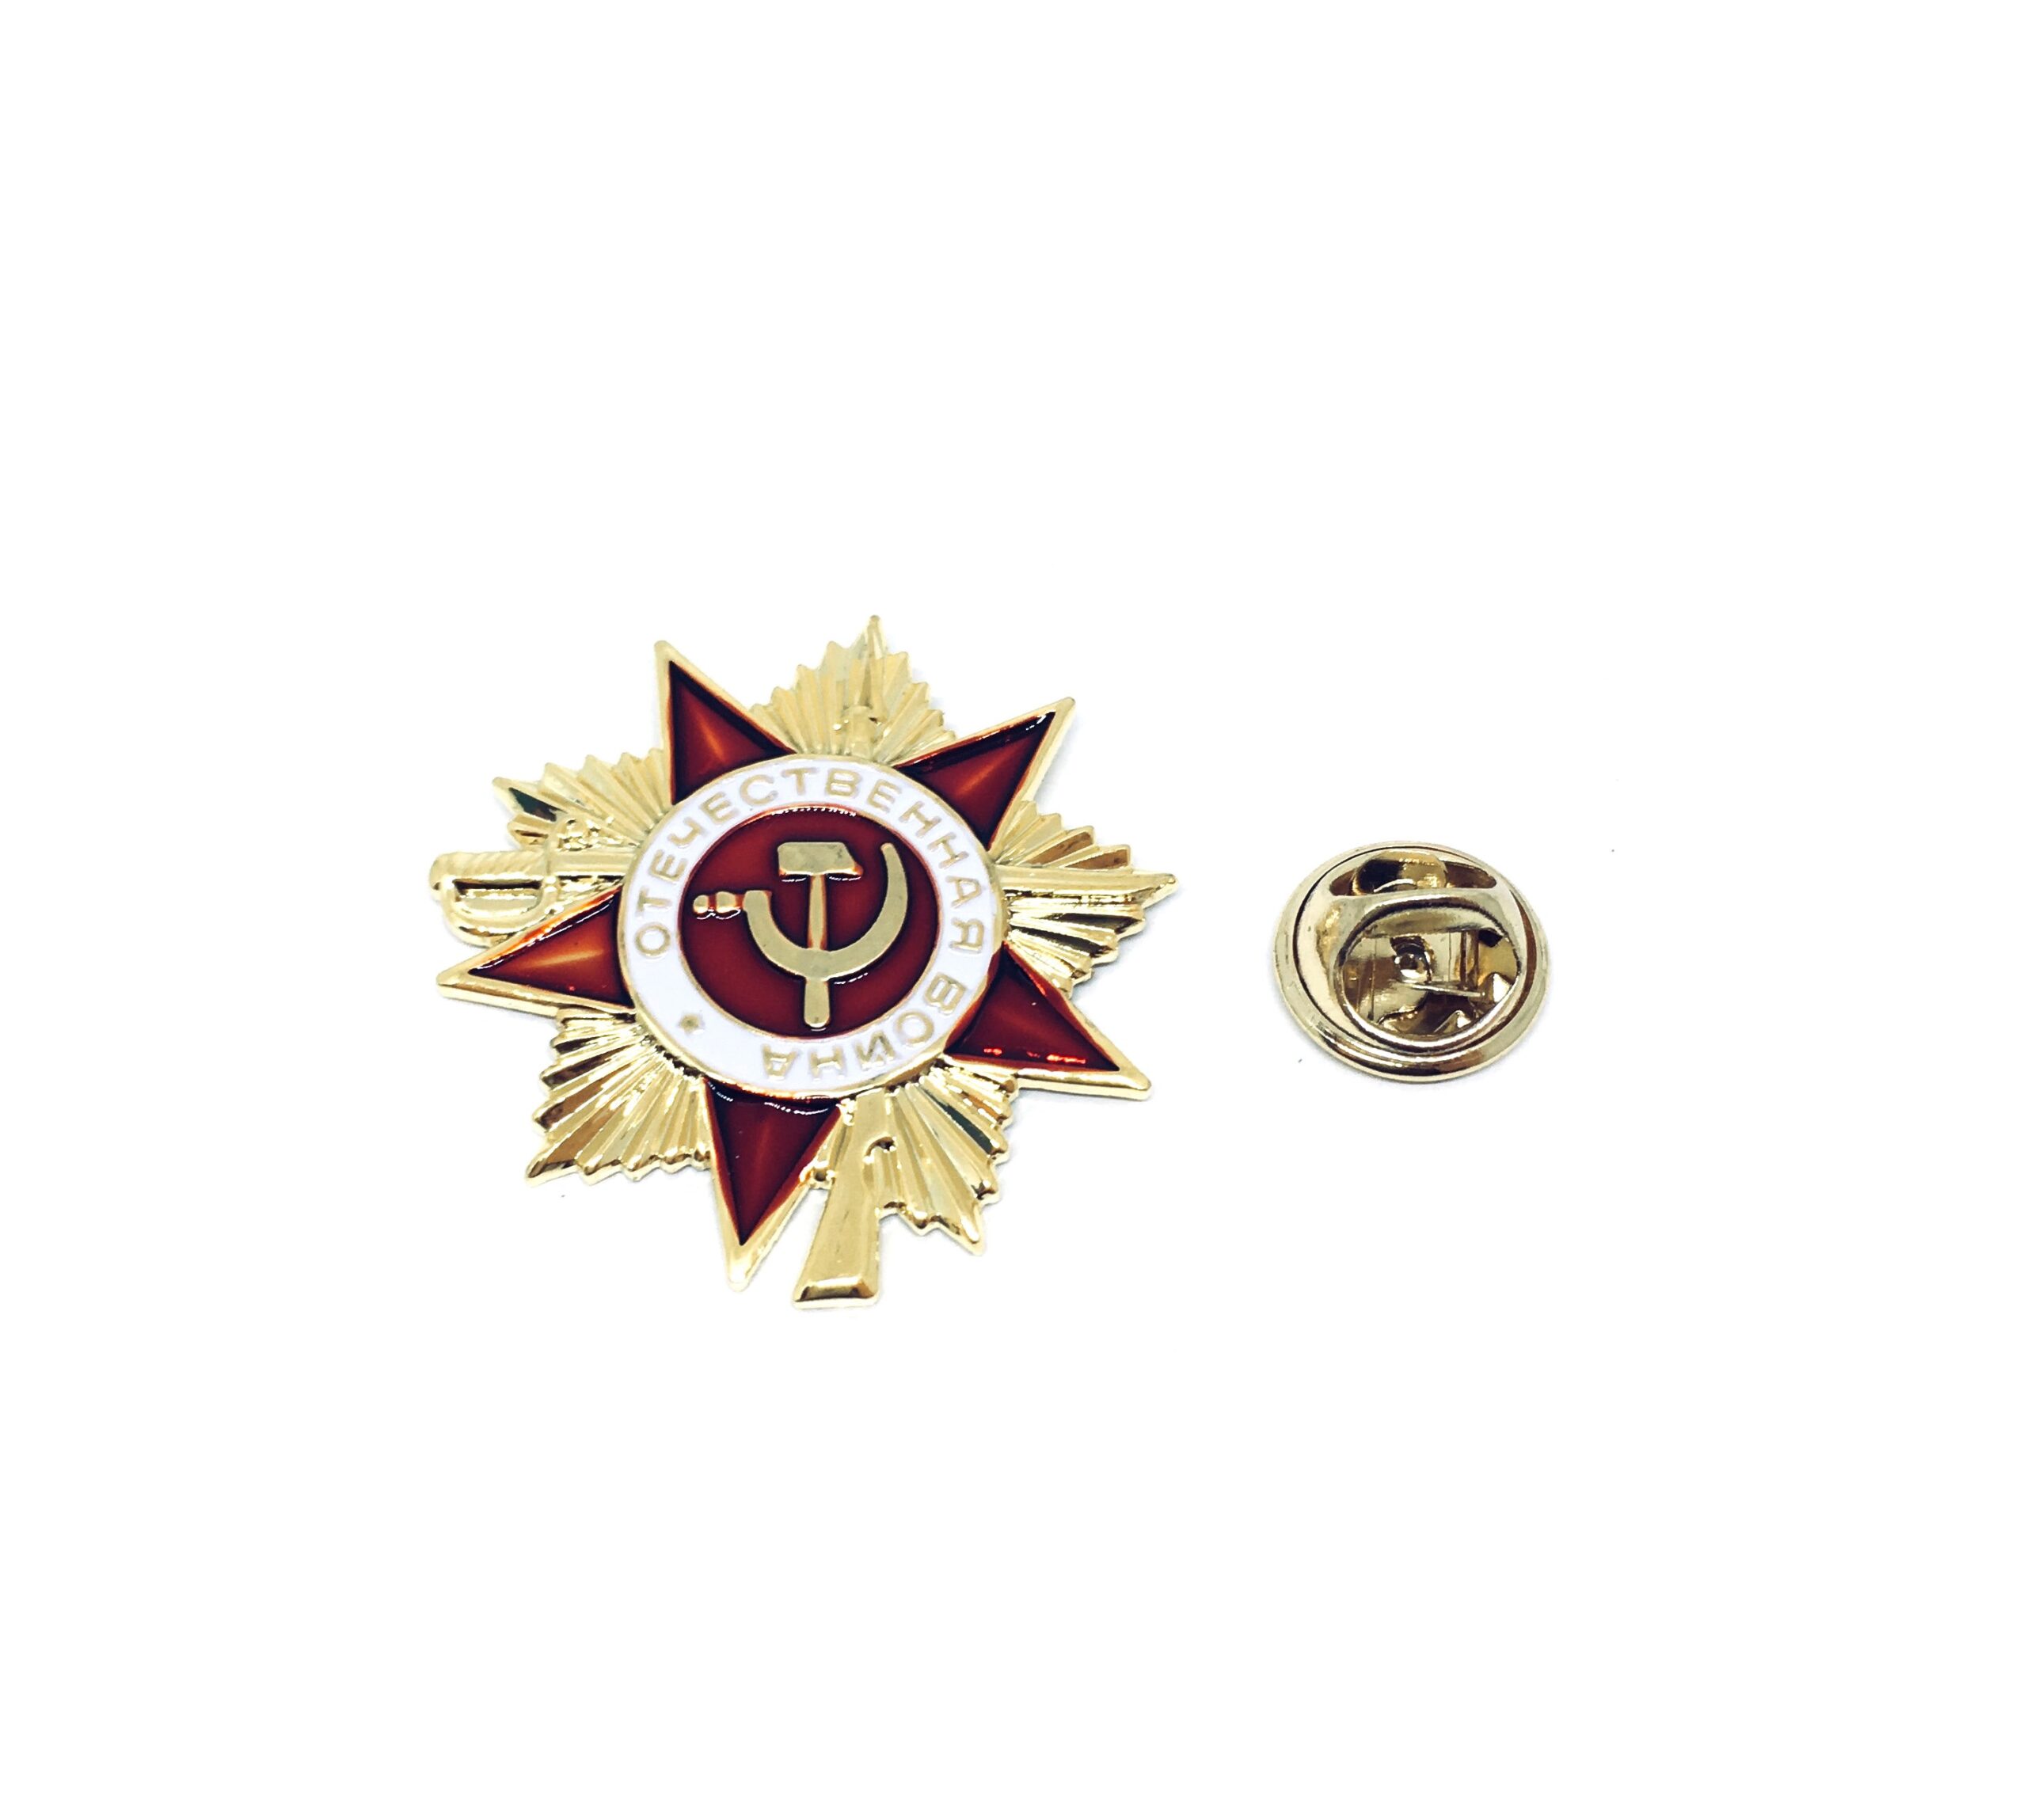 USSR Medal of The Soviet Union Patriotic Brooch Pin